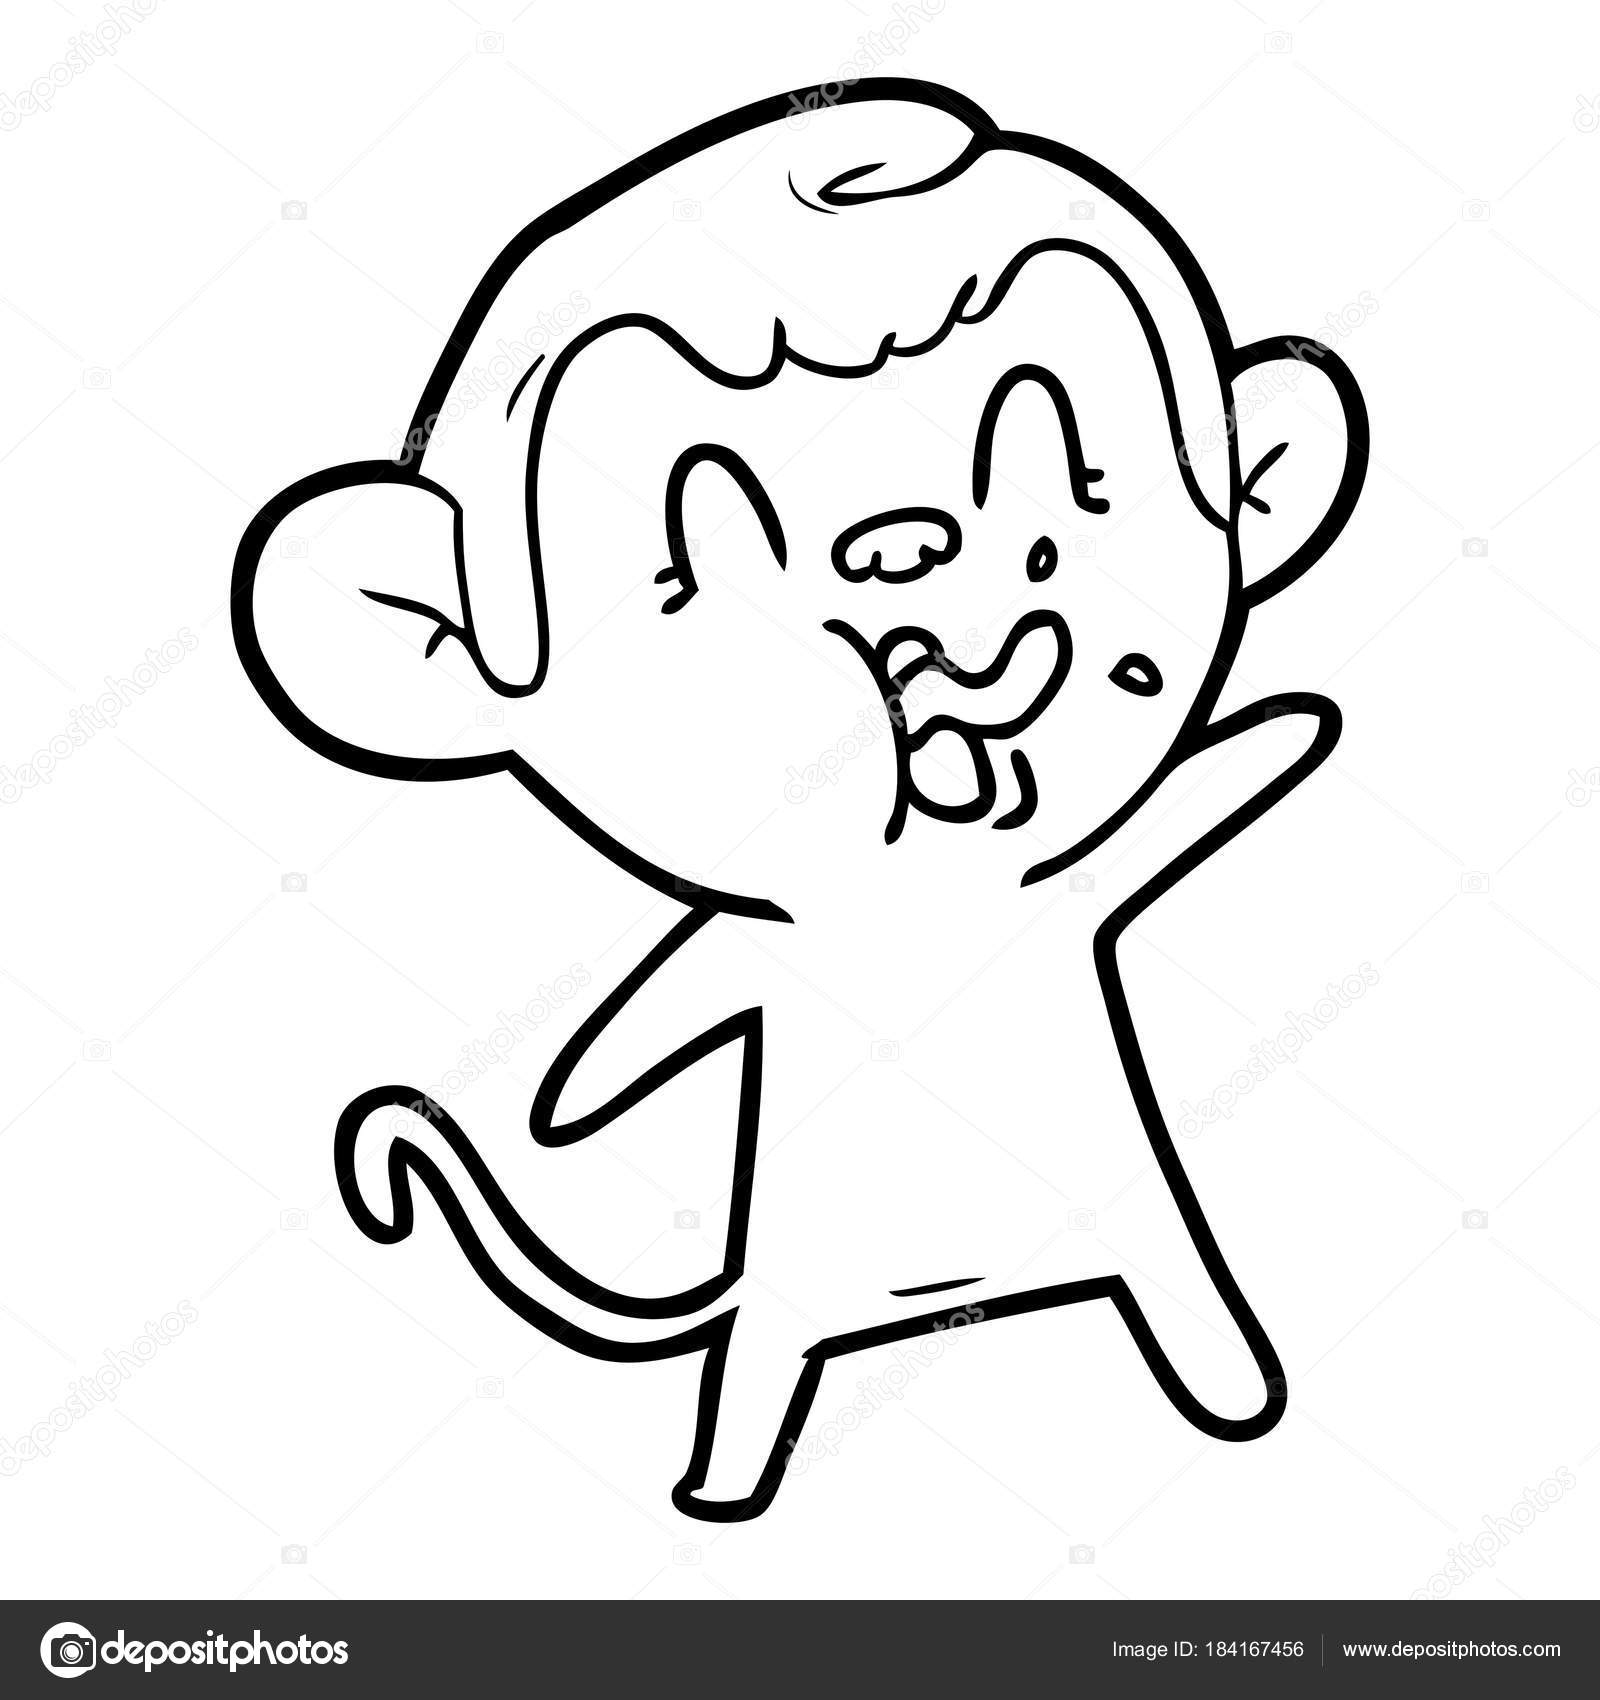 Doodle Dos Desenhos Animados Macaco Louco imagem vetorial de  lineartestpilot© 222176946